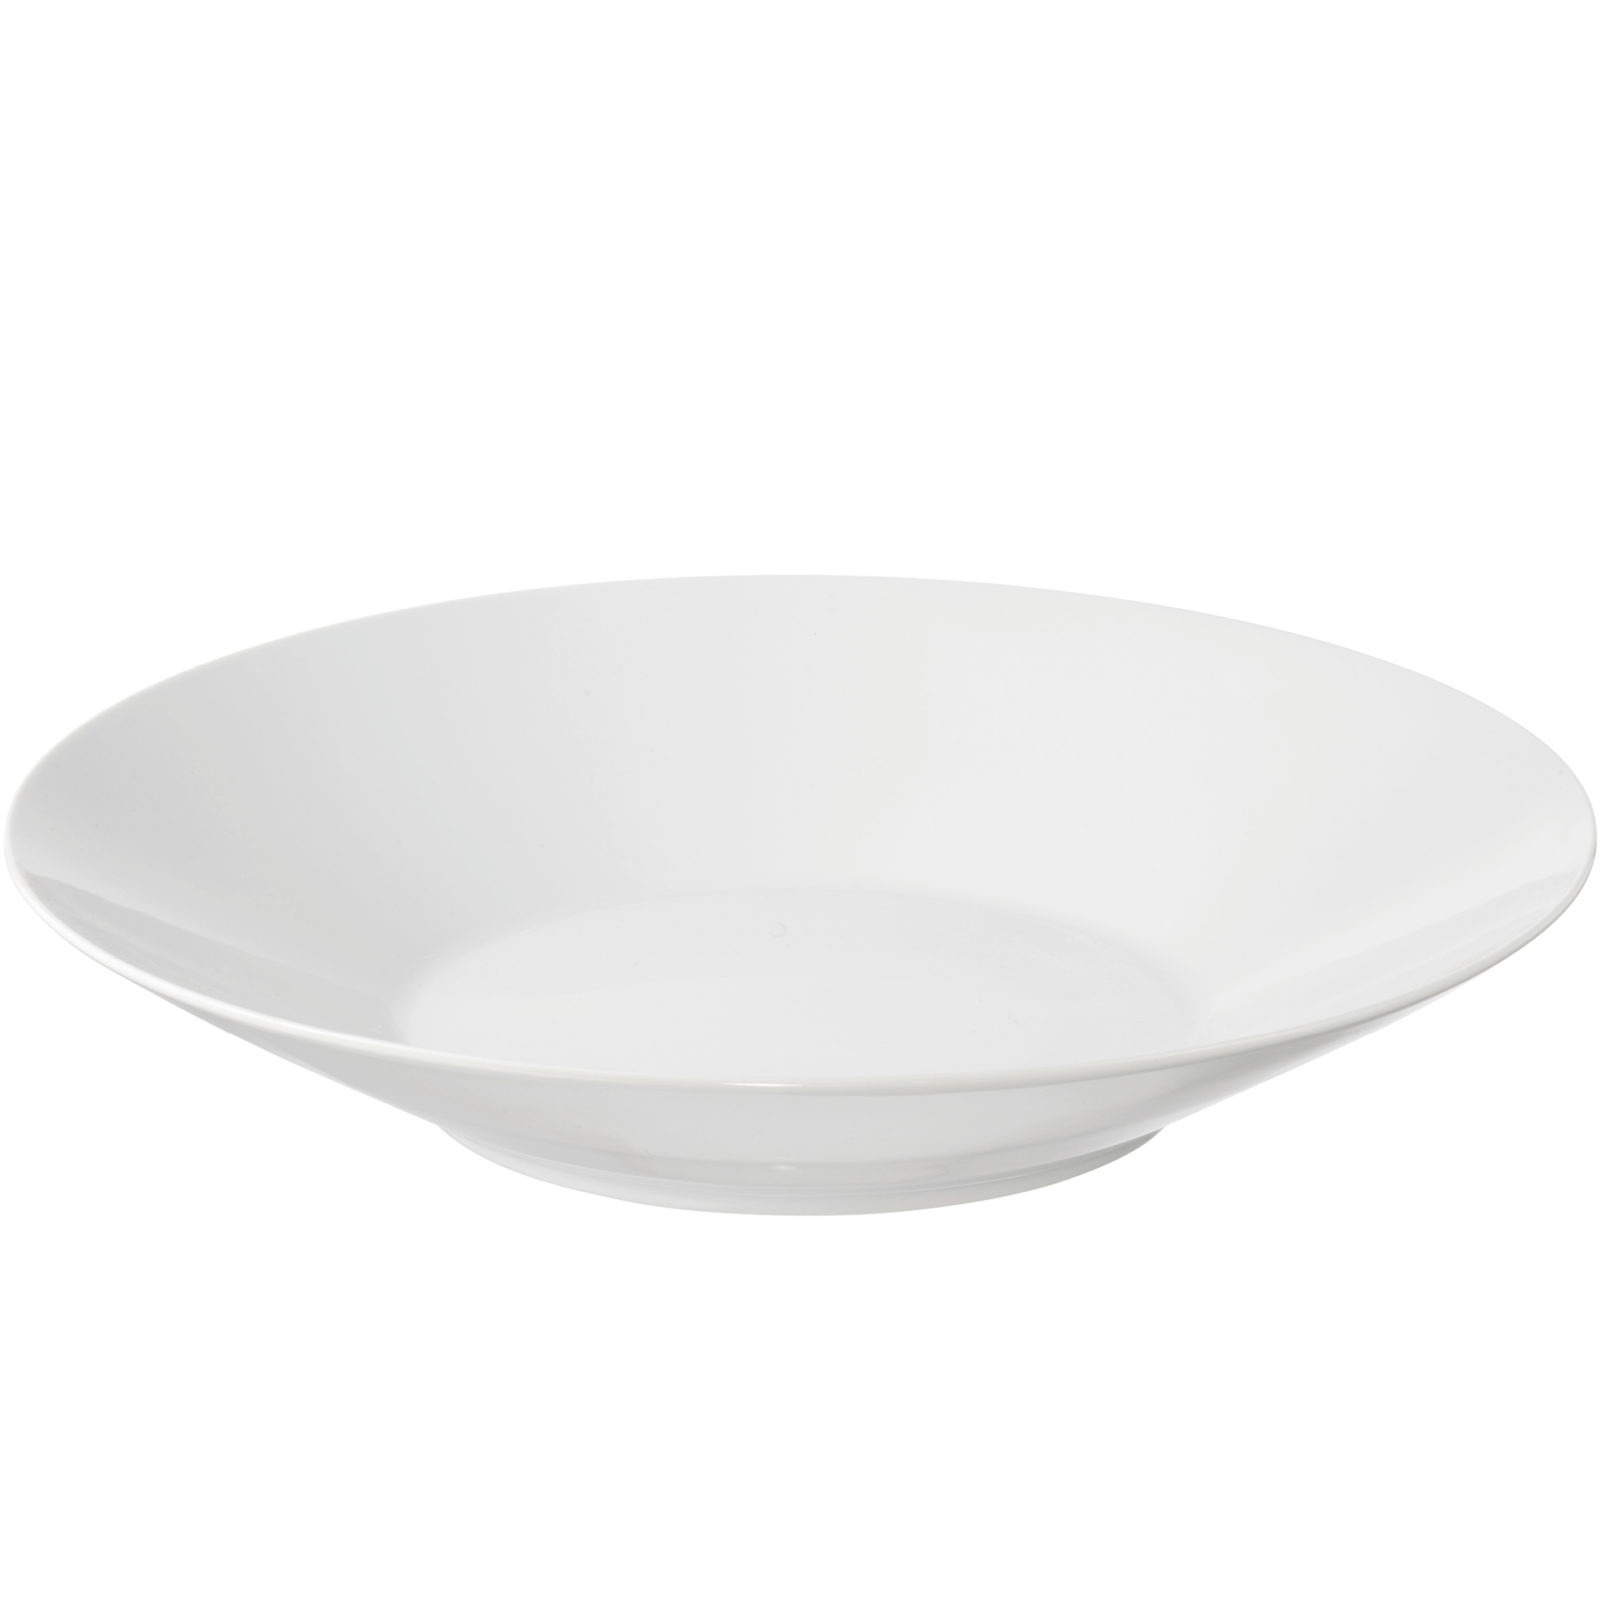 IKEA 365+ bowl.